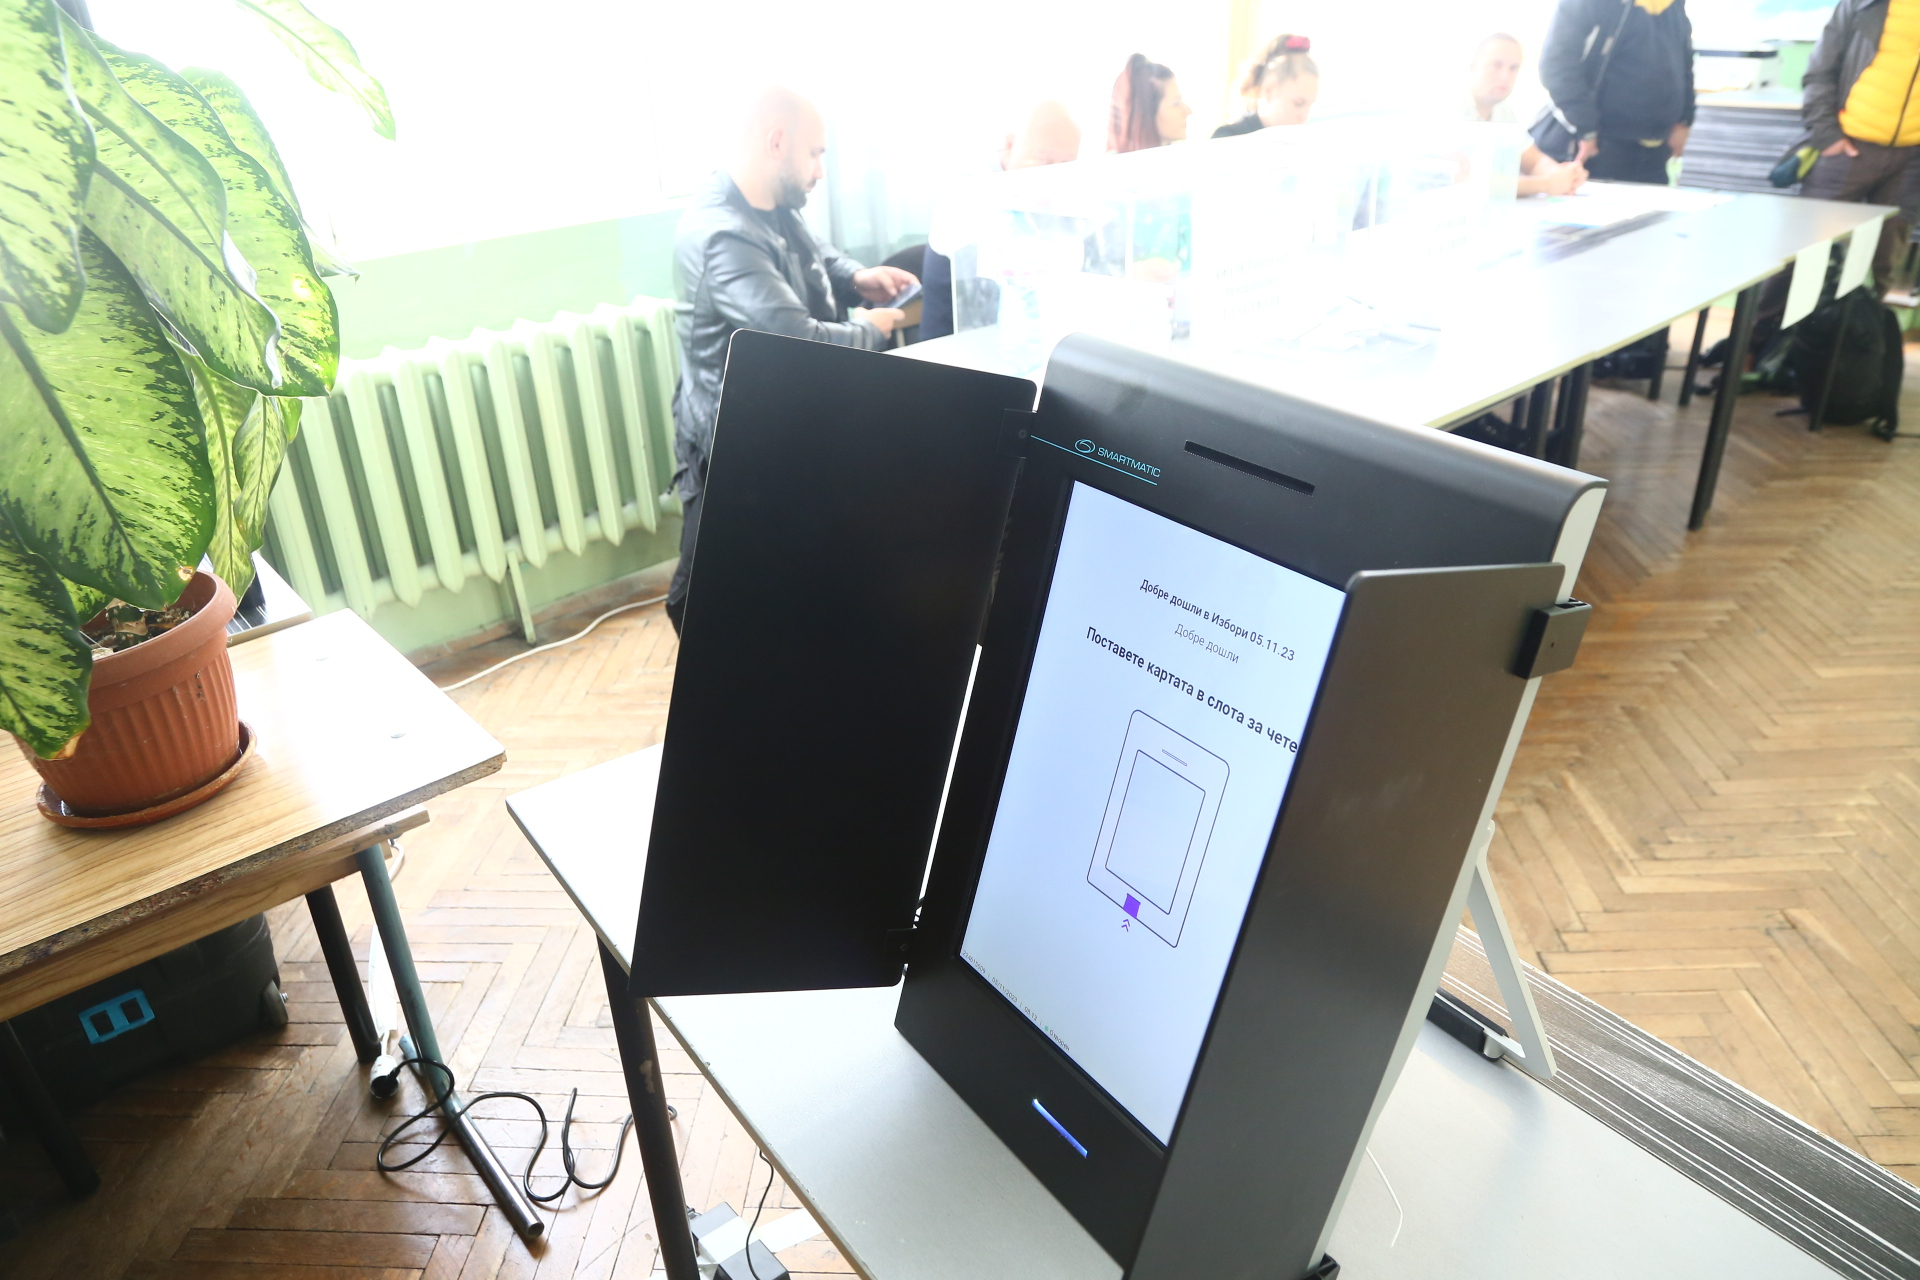 Започна се: Първи гаф с машина за гласуване, ето какво ще правят избирателите